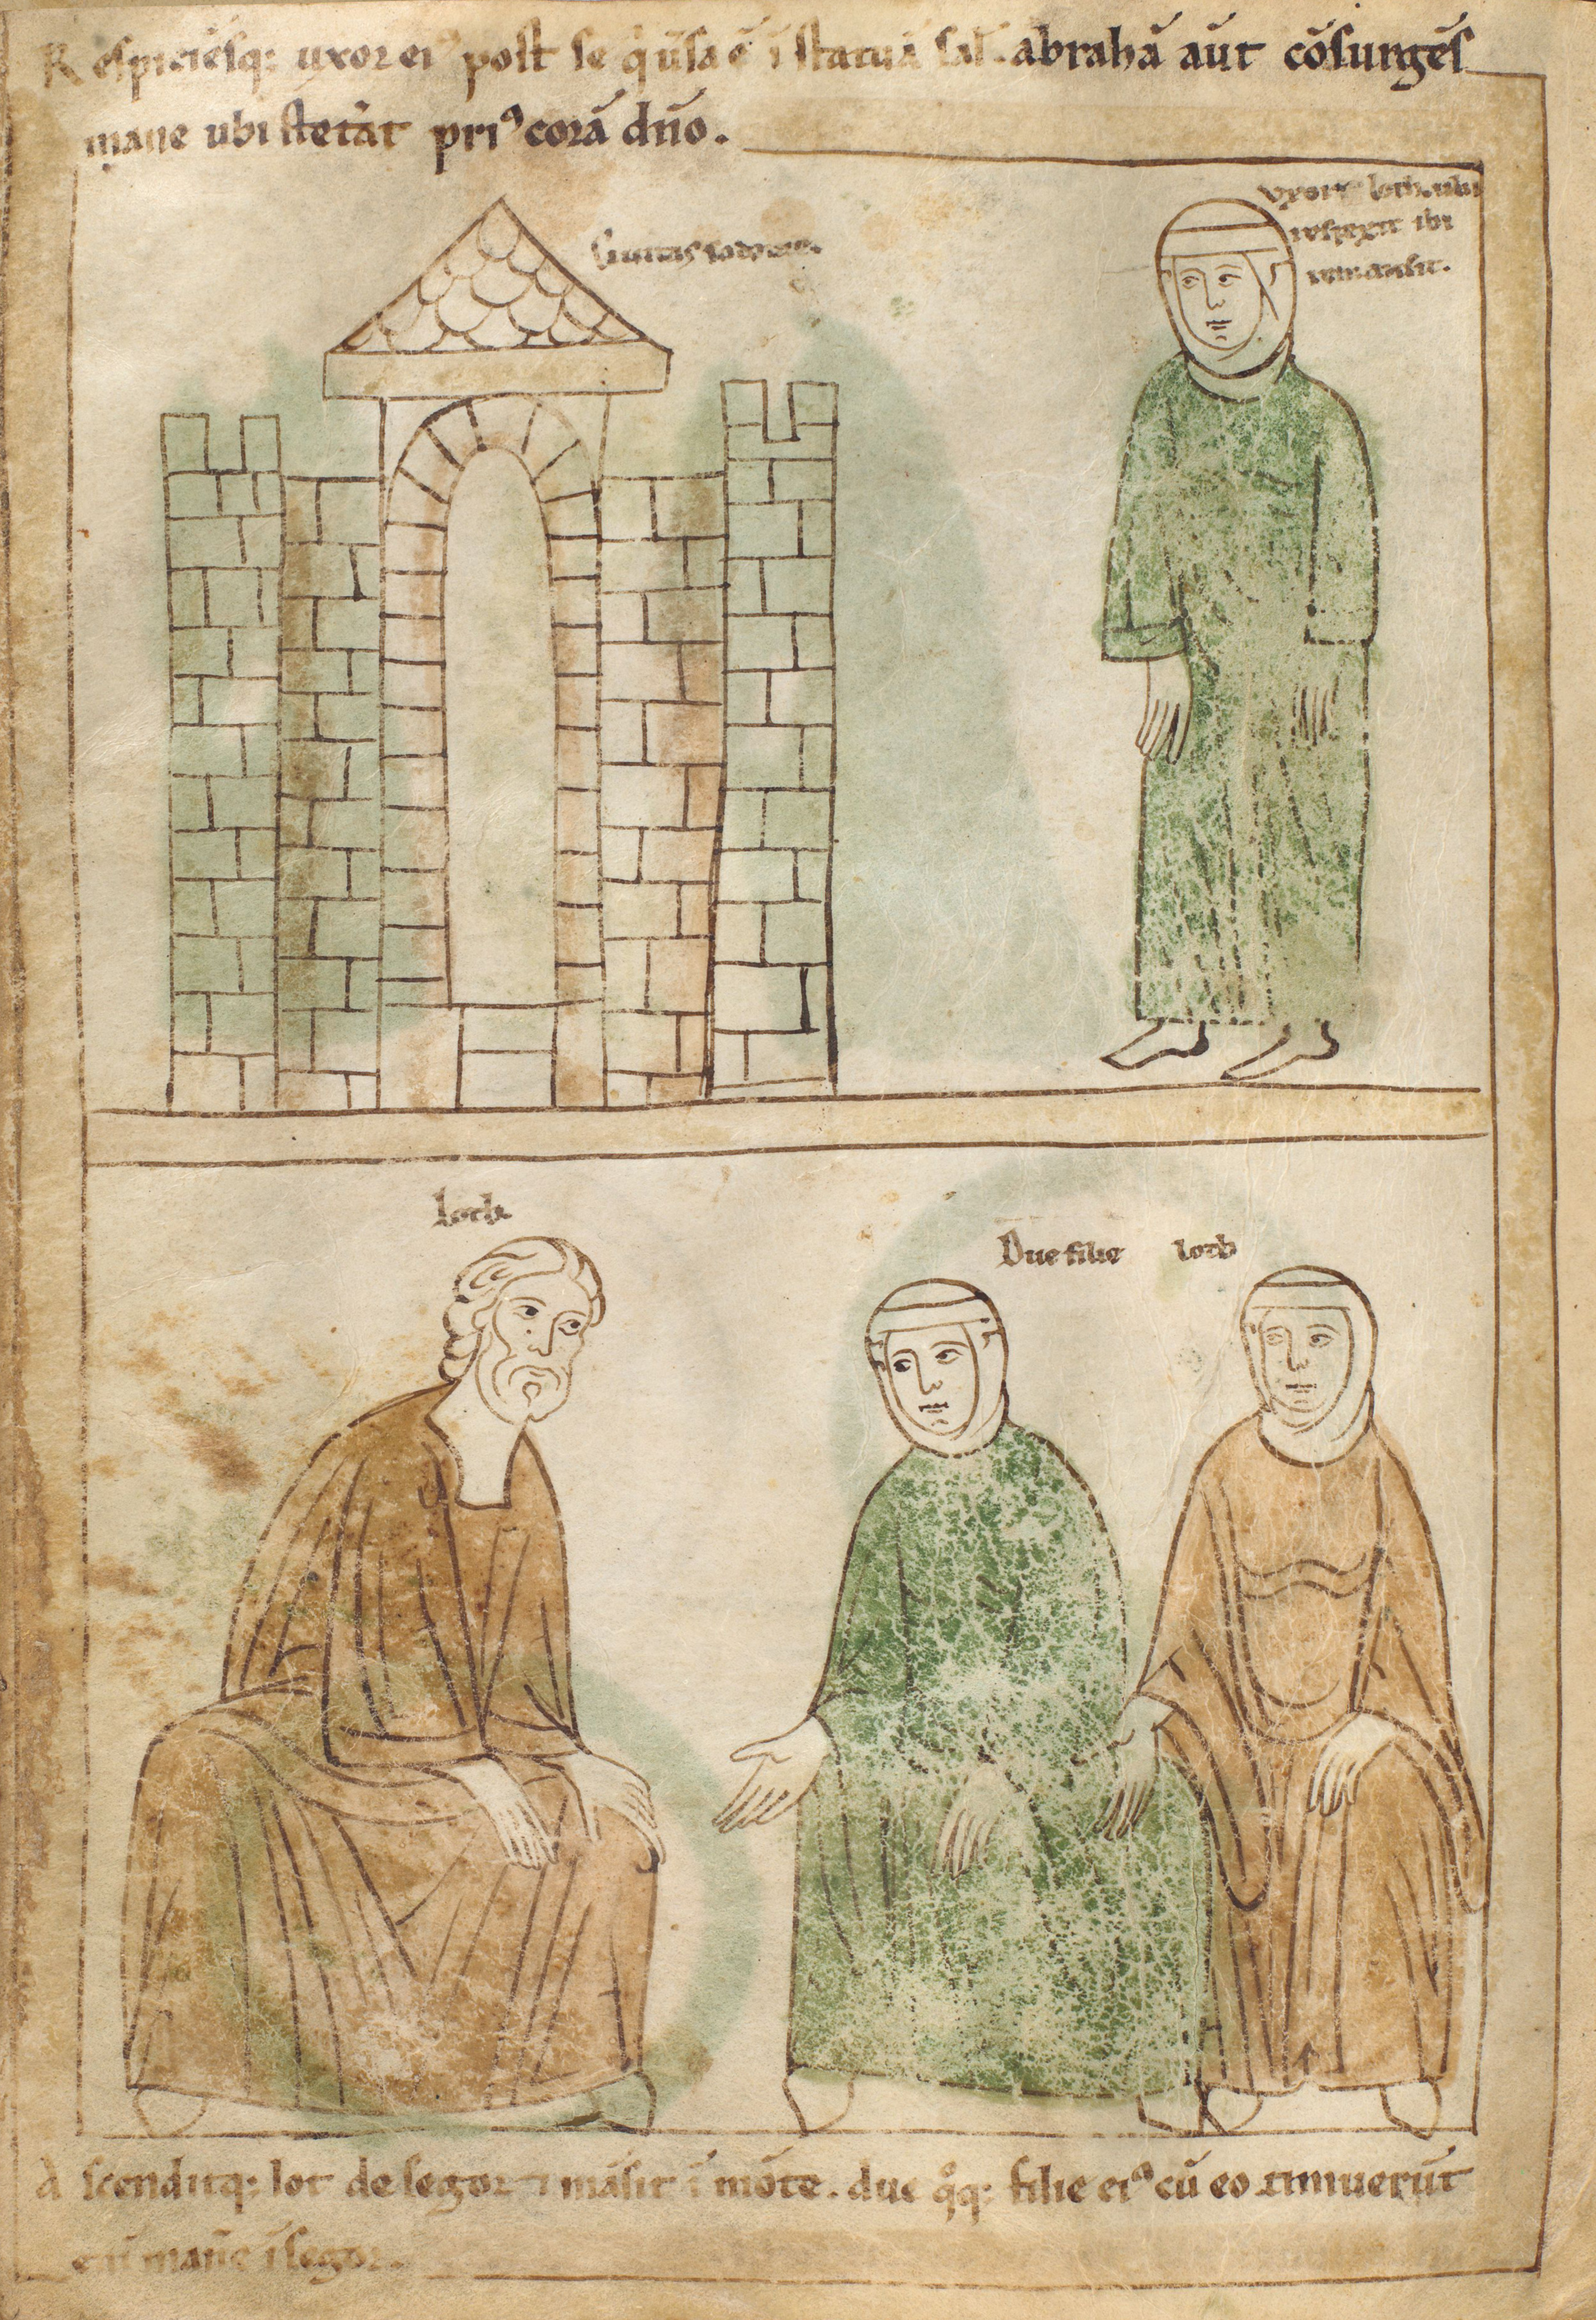 Seconde Bible de Pampelune, folio 17v – La femme de Lot regarde en arrière et se transforme en colonne de sel (Gn 19, 26). Lot survit avec ses deux filles (Gn 19, 30).